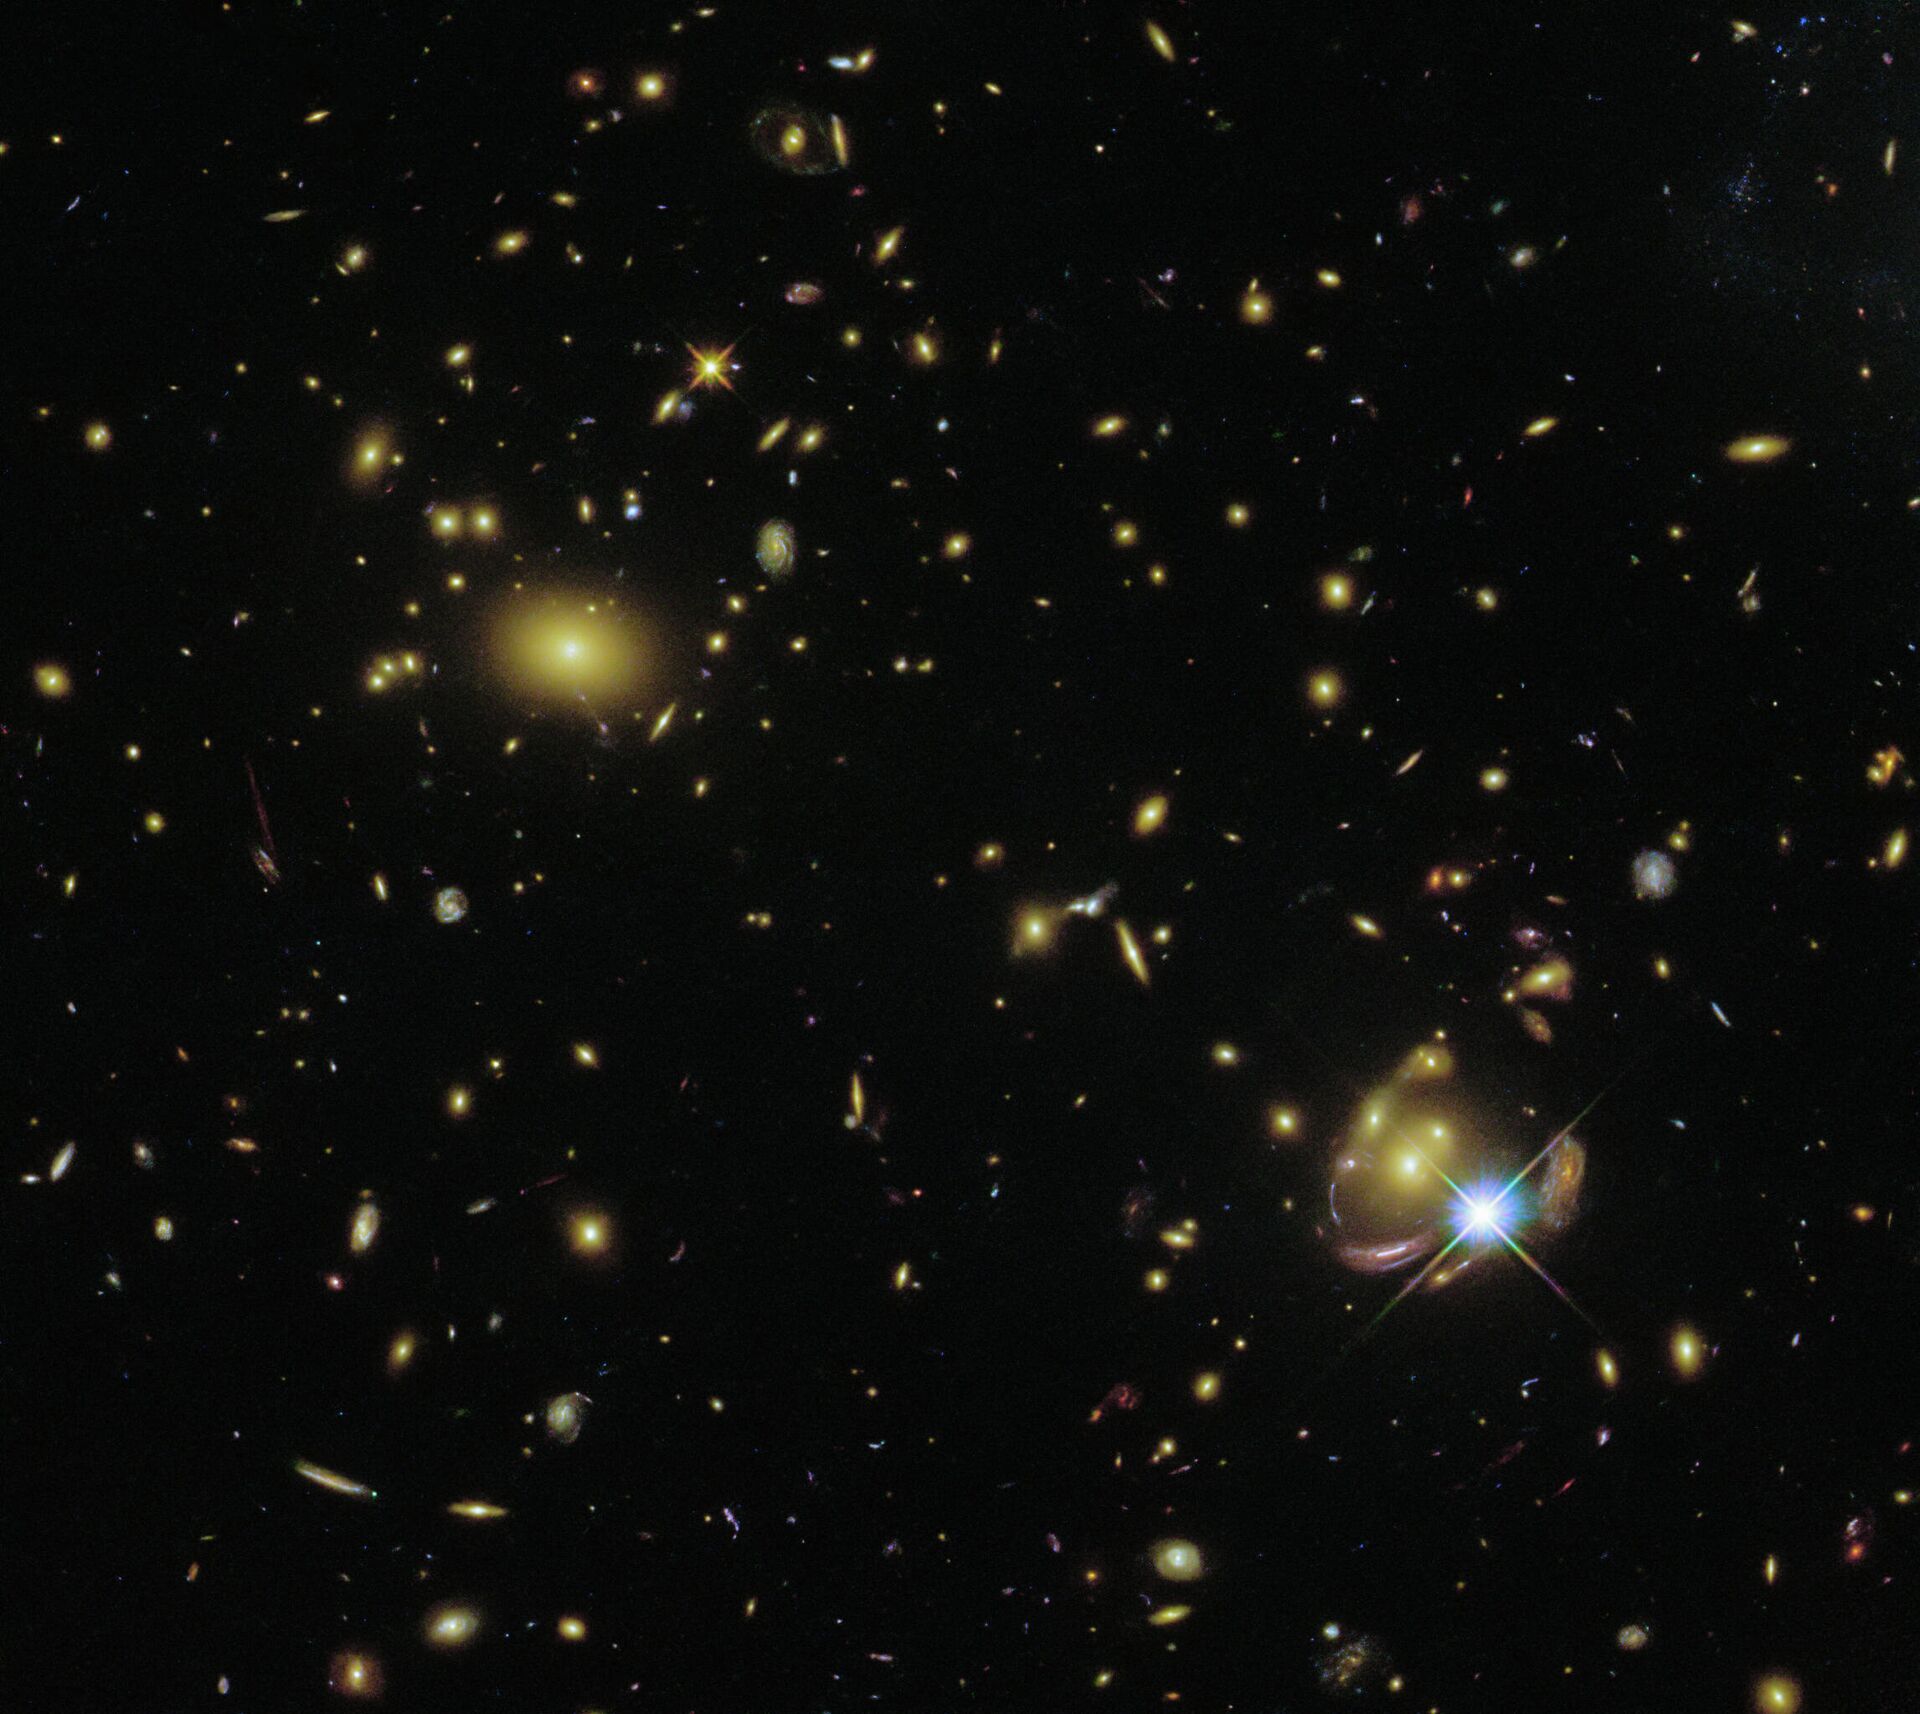 Galáxia SGAS 0033+02 surge múltiplas vezes na mesma imagem - Sputnik Brasil, 1920, 22.11.2021